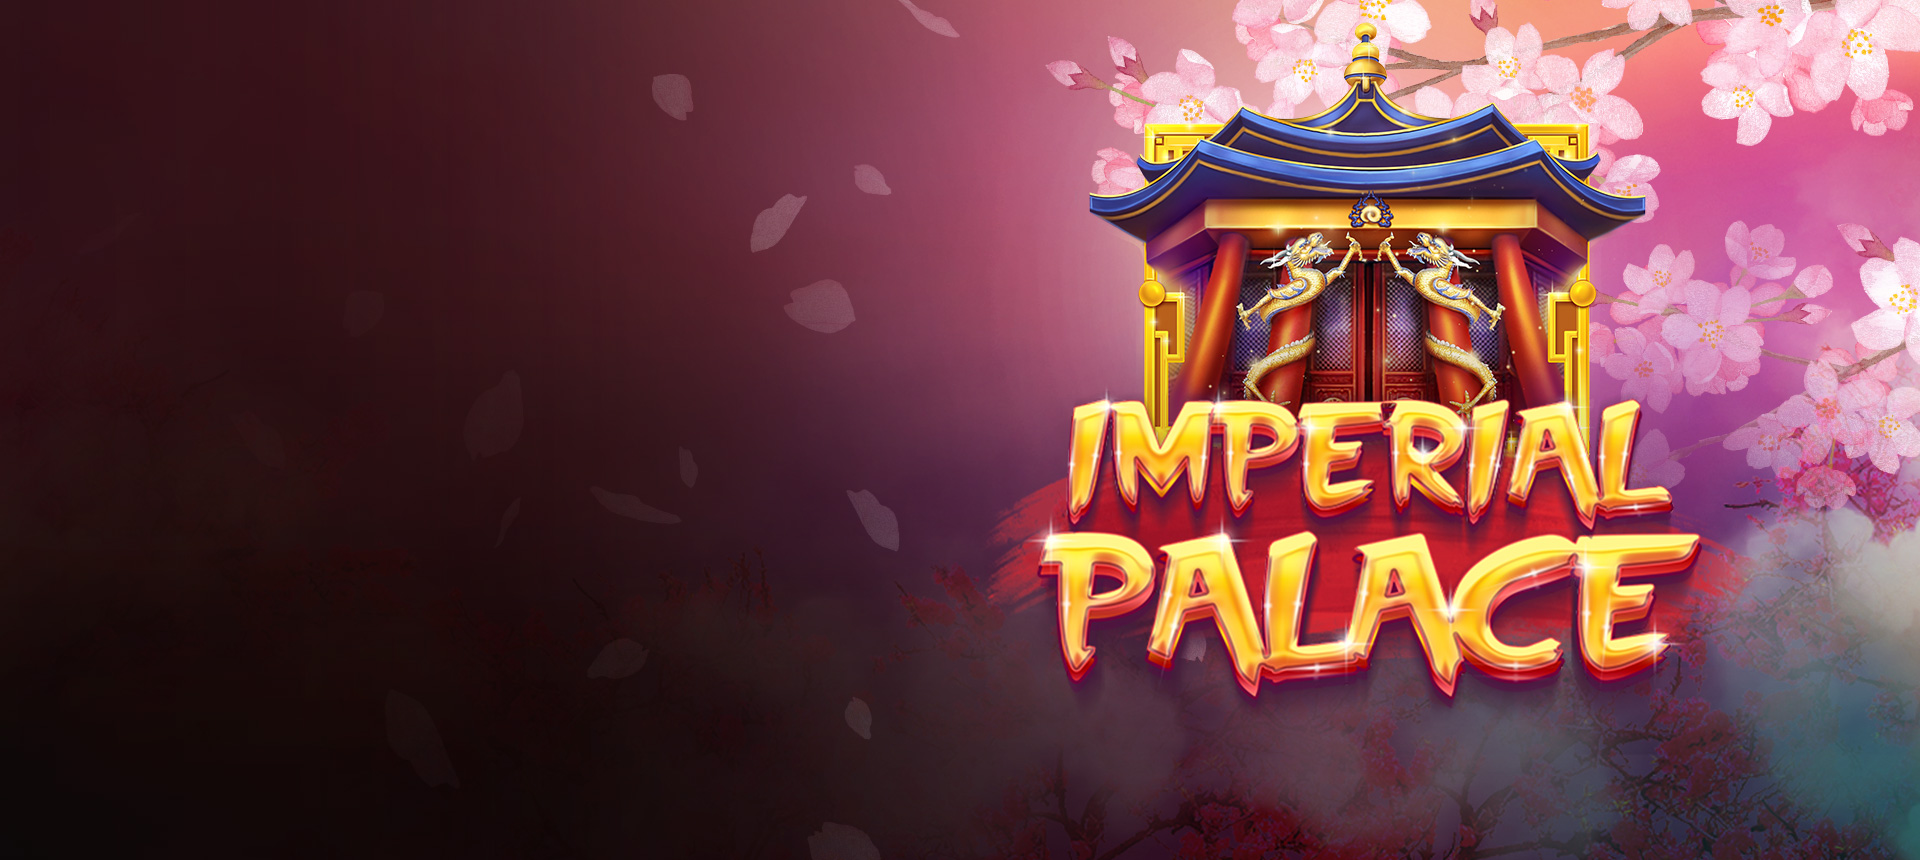 ¡Has sido invitado al palacio imperial!